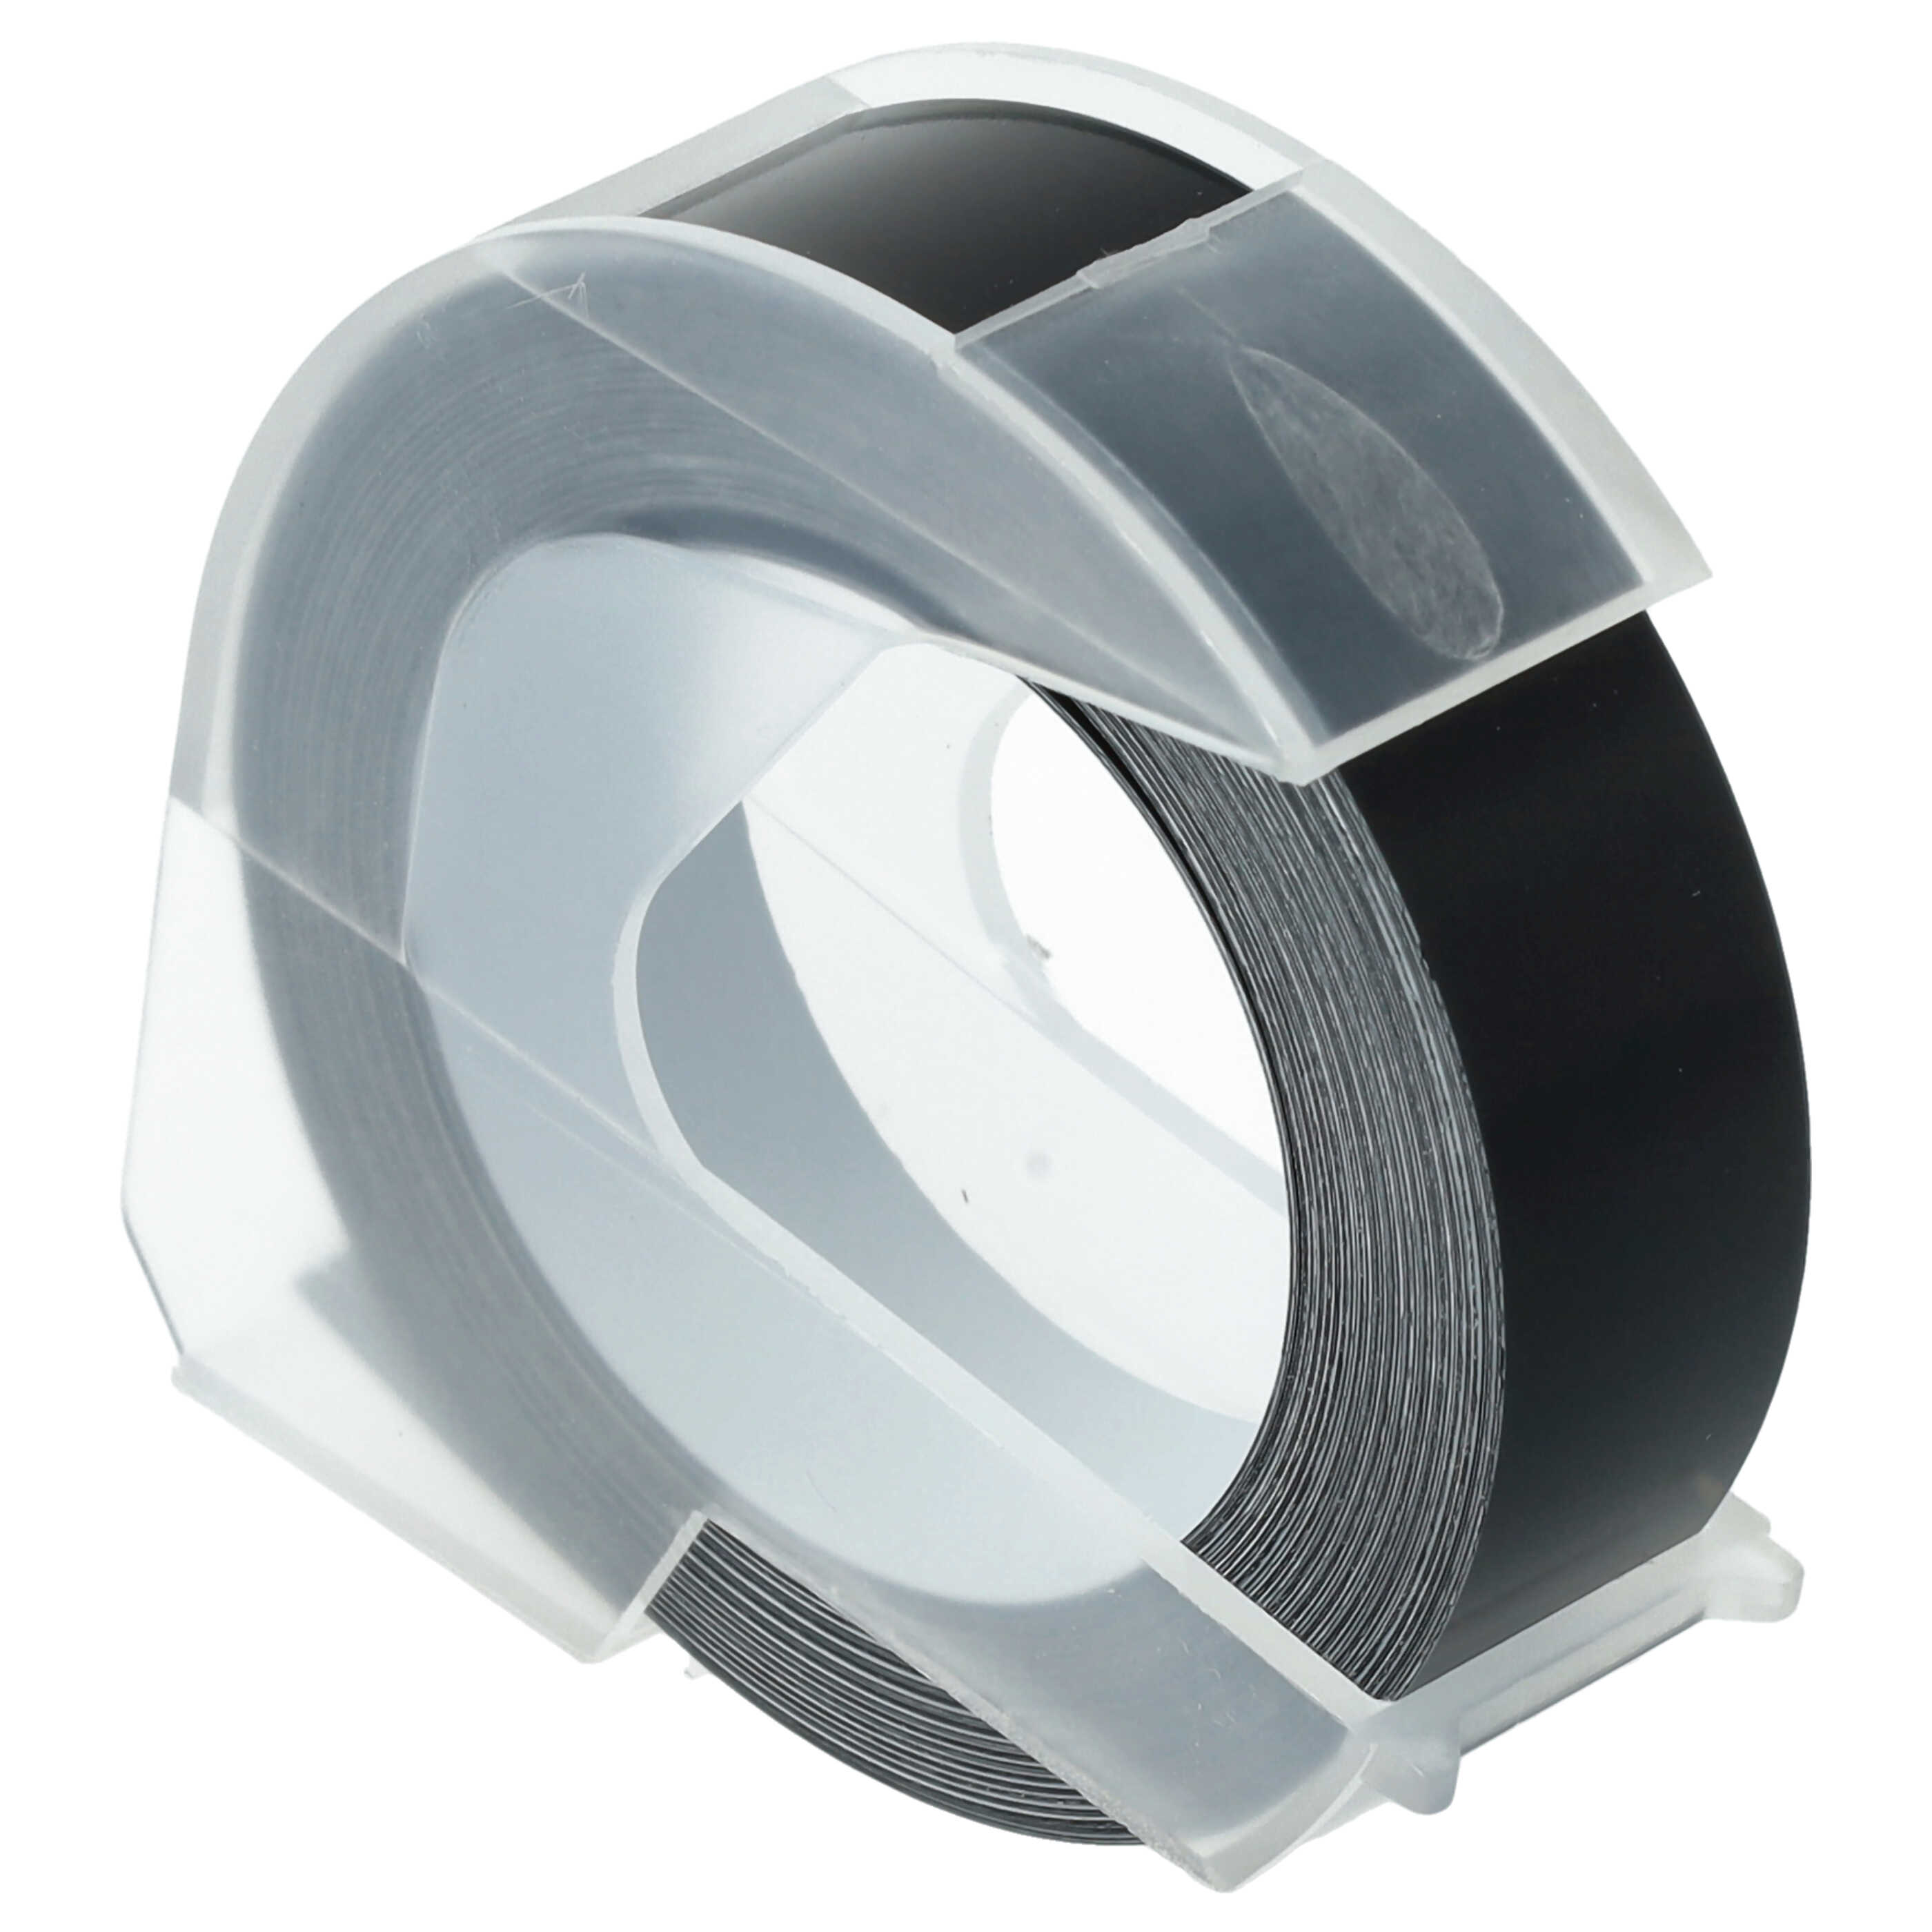 Casete cinta relieve 3D Casete cinta escritura reemplaza Dymo 0898132 Blanco su Negro